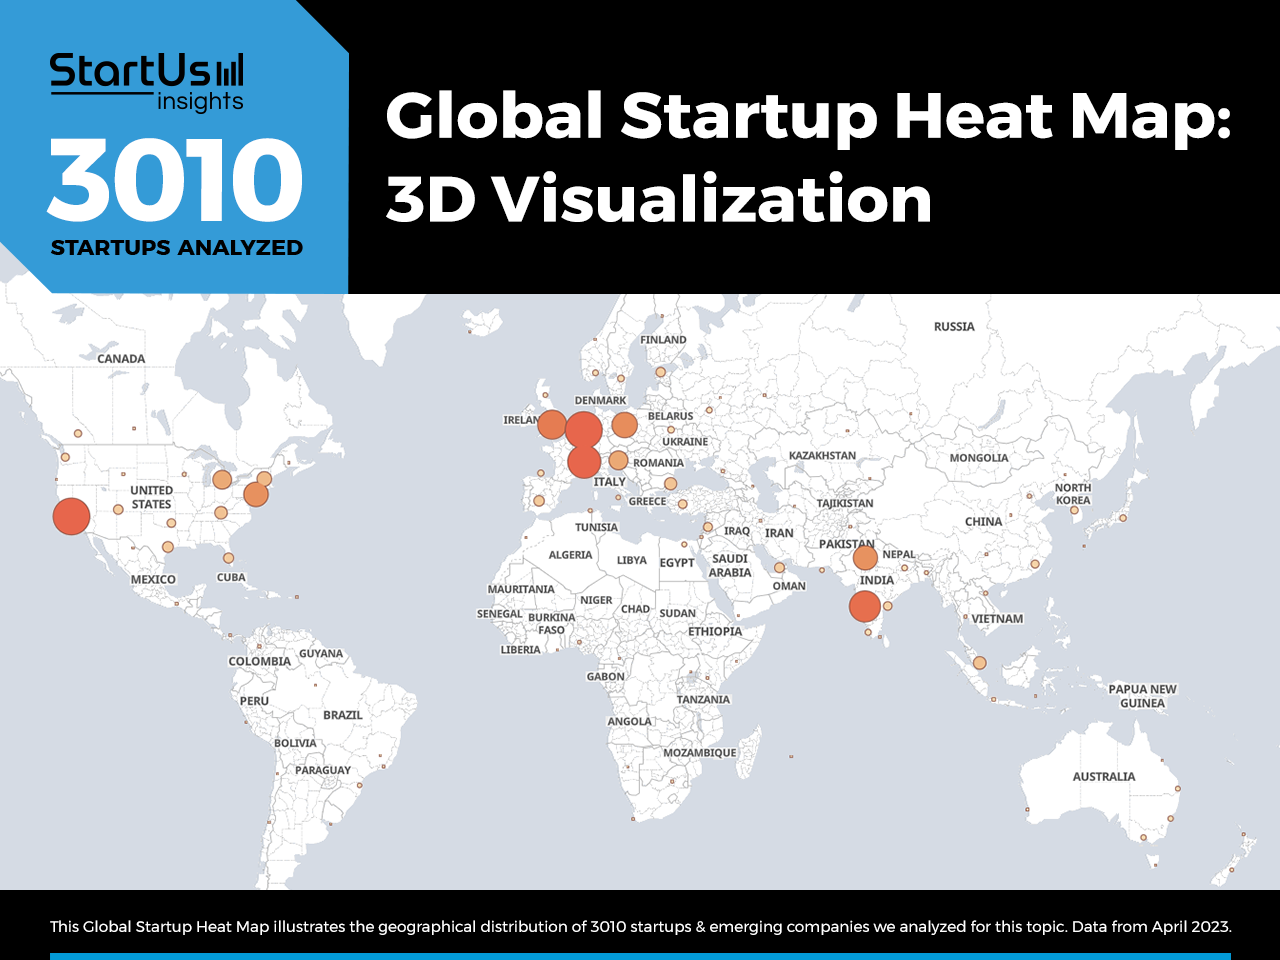 3D-Visualization-Heat-Map-StartUs-Insights-noresize